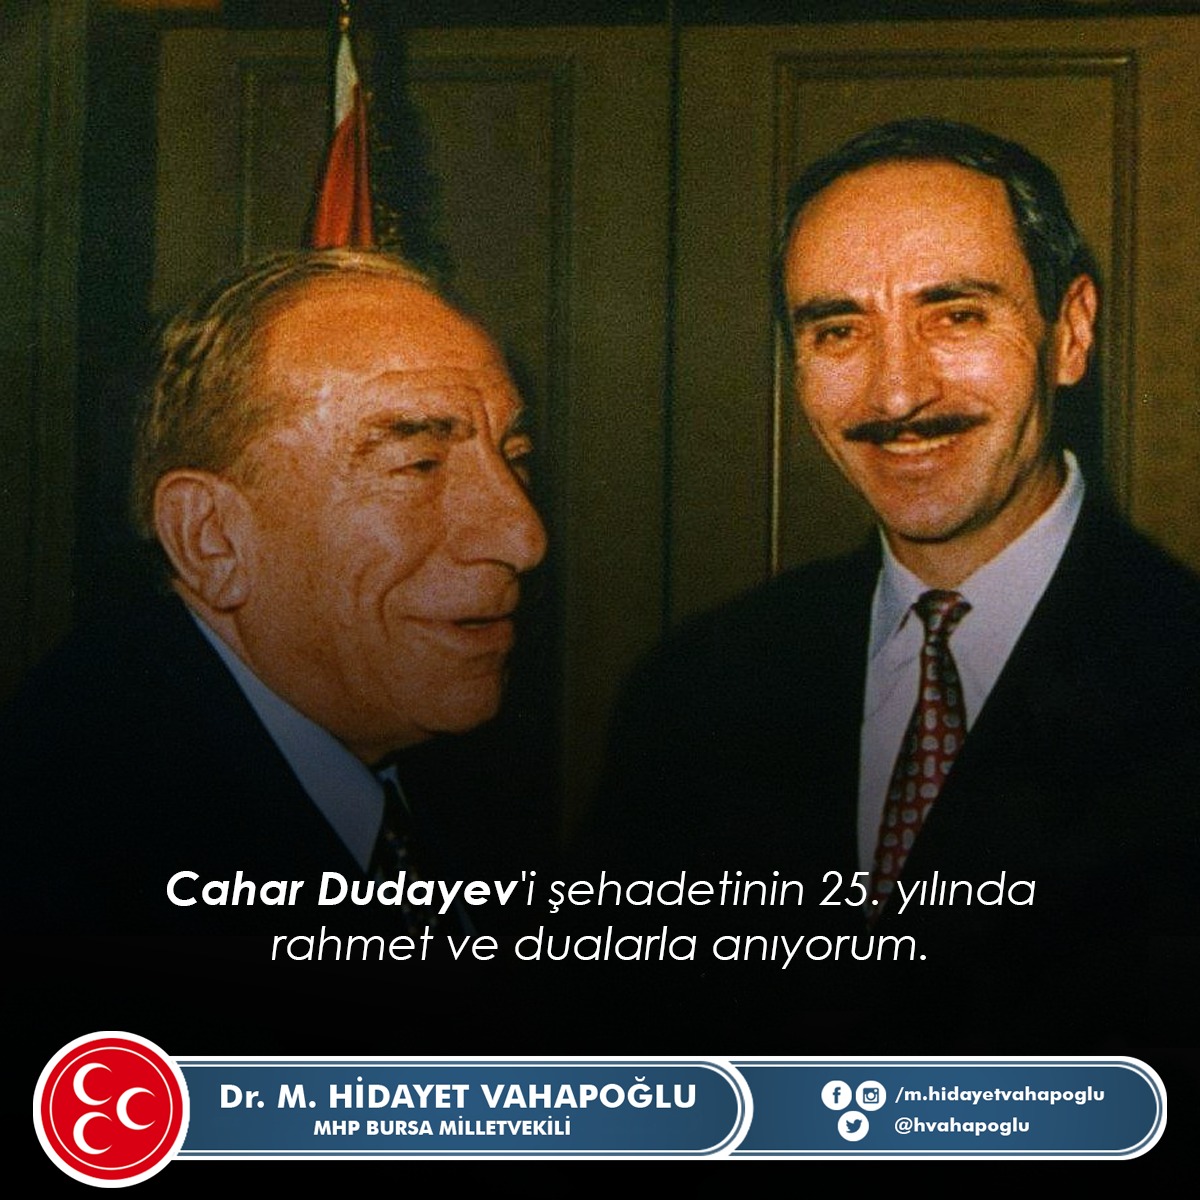 #CaharDudayev'i şehadetinin 25. yılında rahmet ve dualarla anıyorum.